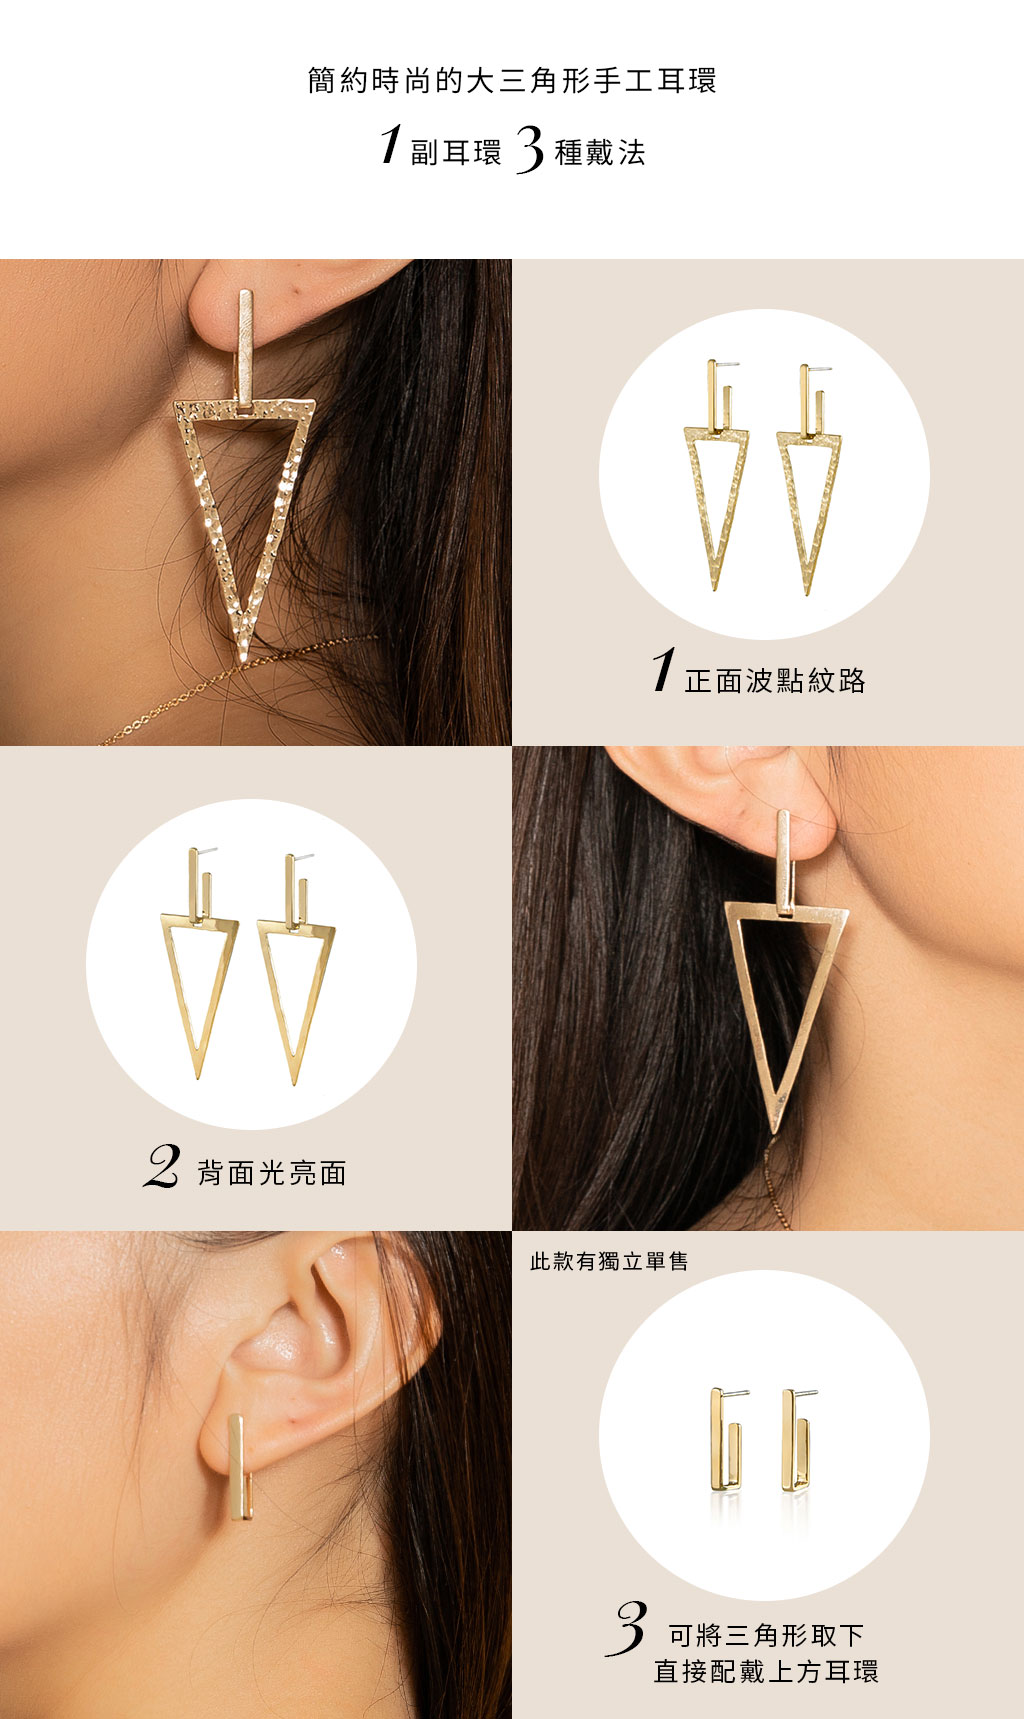 MULTIWAY earrings